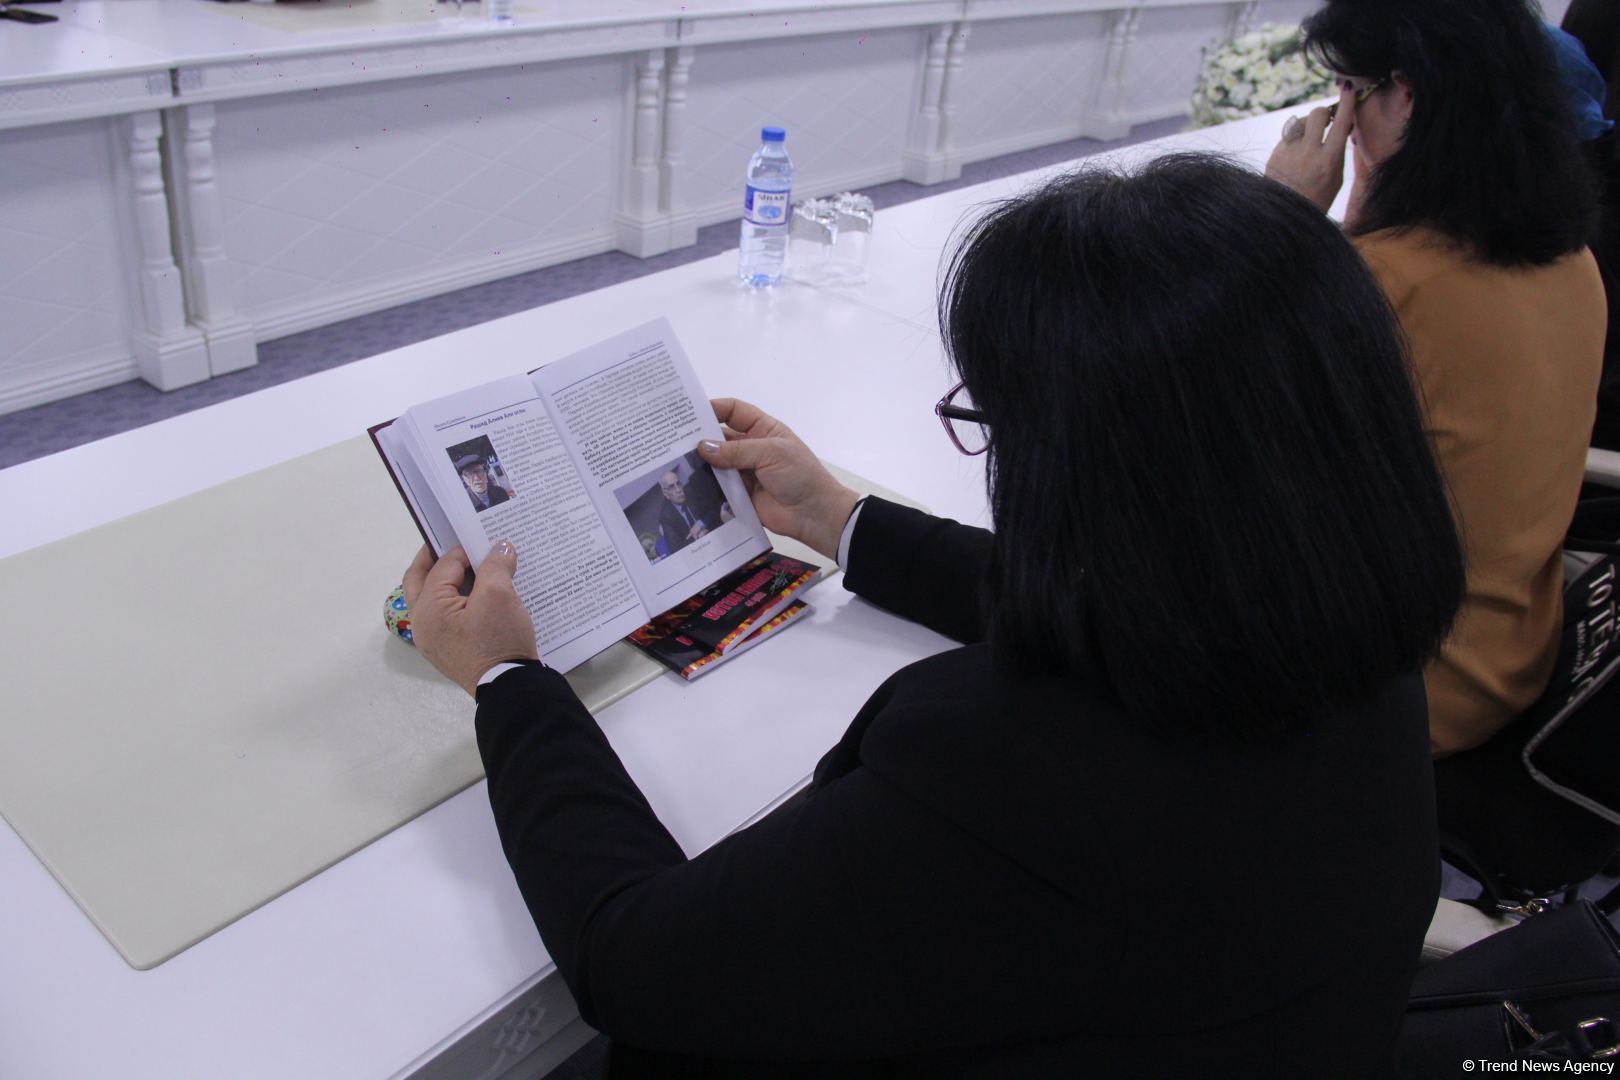 В Баку состоялась презентация книги Насихи Кенжиной "Ербол - шехид Карабаха" о герое из Казахстана  (ФОТО)